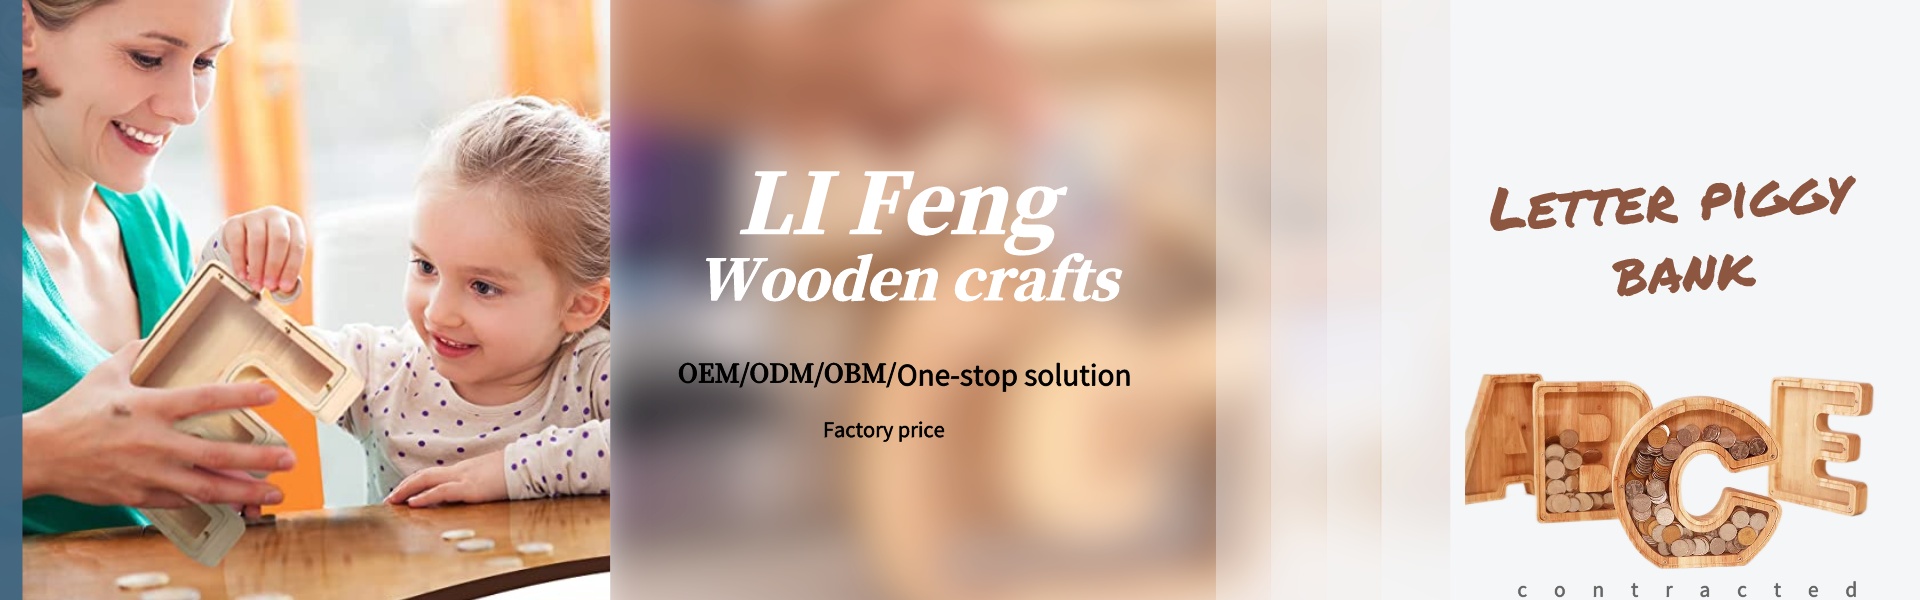 Đồ trang trí động vật bằng gỗ 3D, thư cợnm bằng gỗ, bản đồ thế giới gỗ 3D,Dongguan Houjie Lifeng Laser Engraving Craft Factory